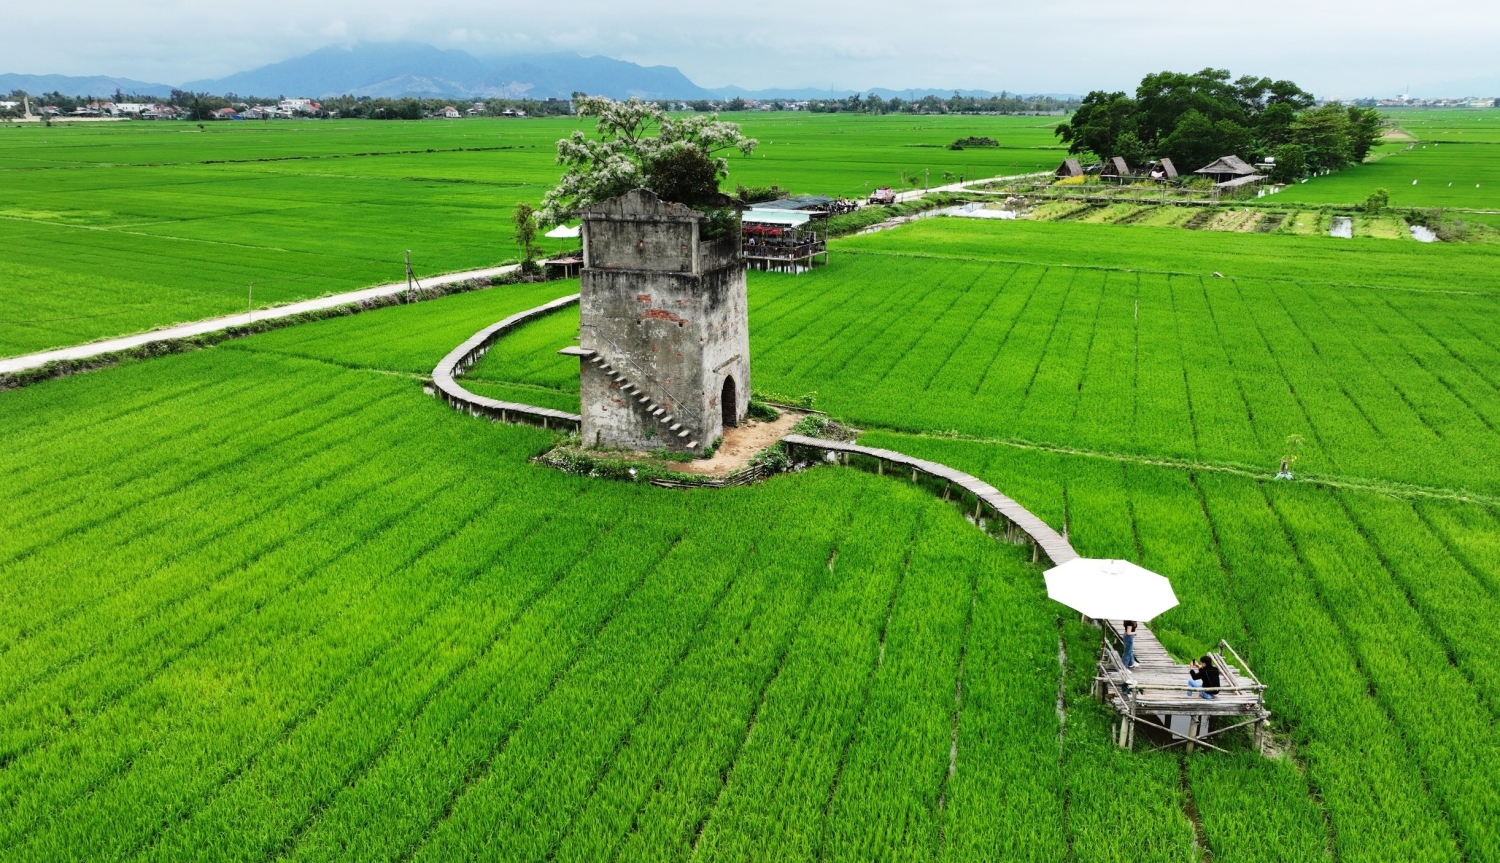  Lò gạch cũ ở xã Duy Vinh (huyện Duy Xuyên, tỉnh Quảng Nam) là điểm đến du lịch xanh thu hút du khách đến tham quan và trải nghiệm